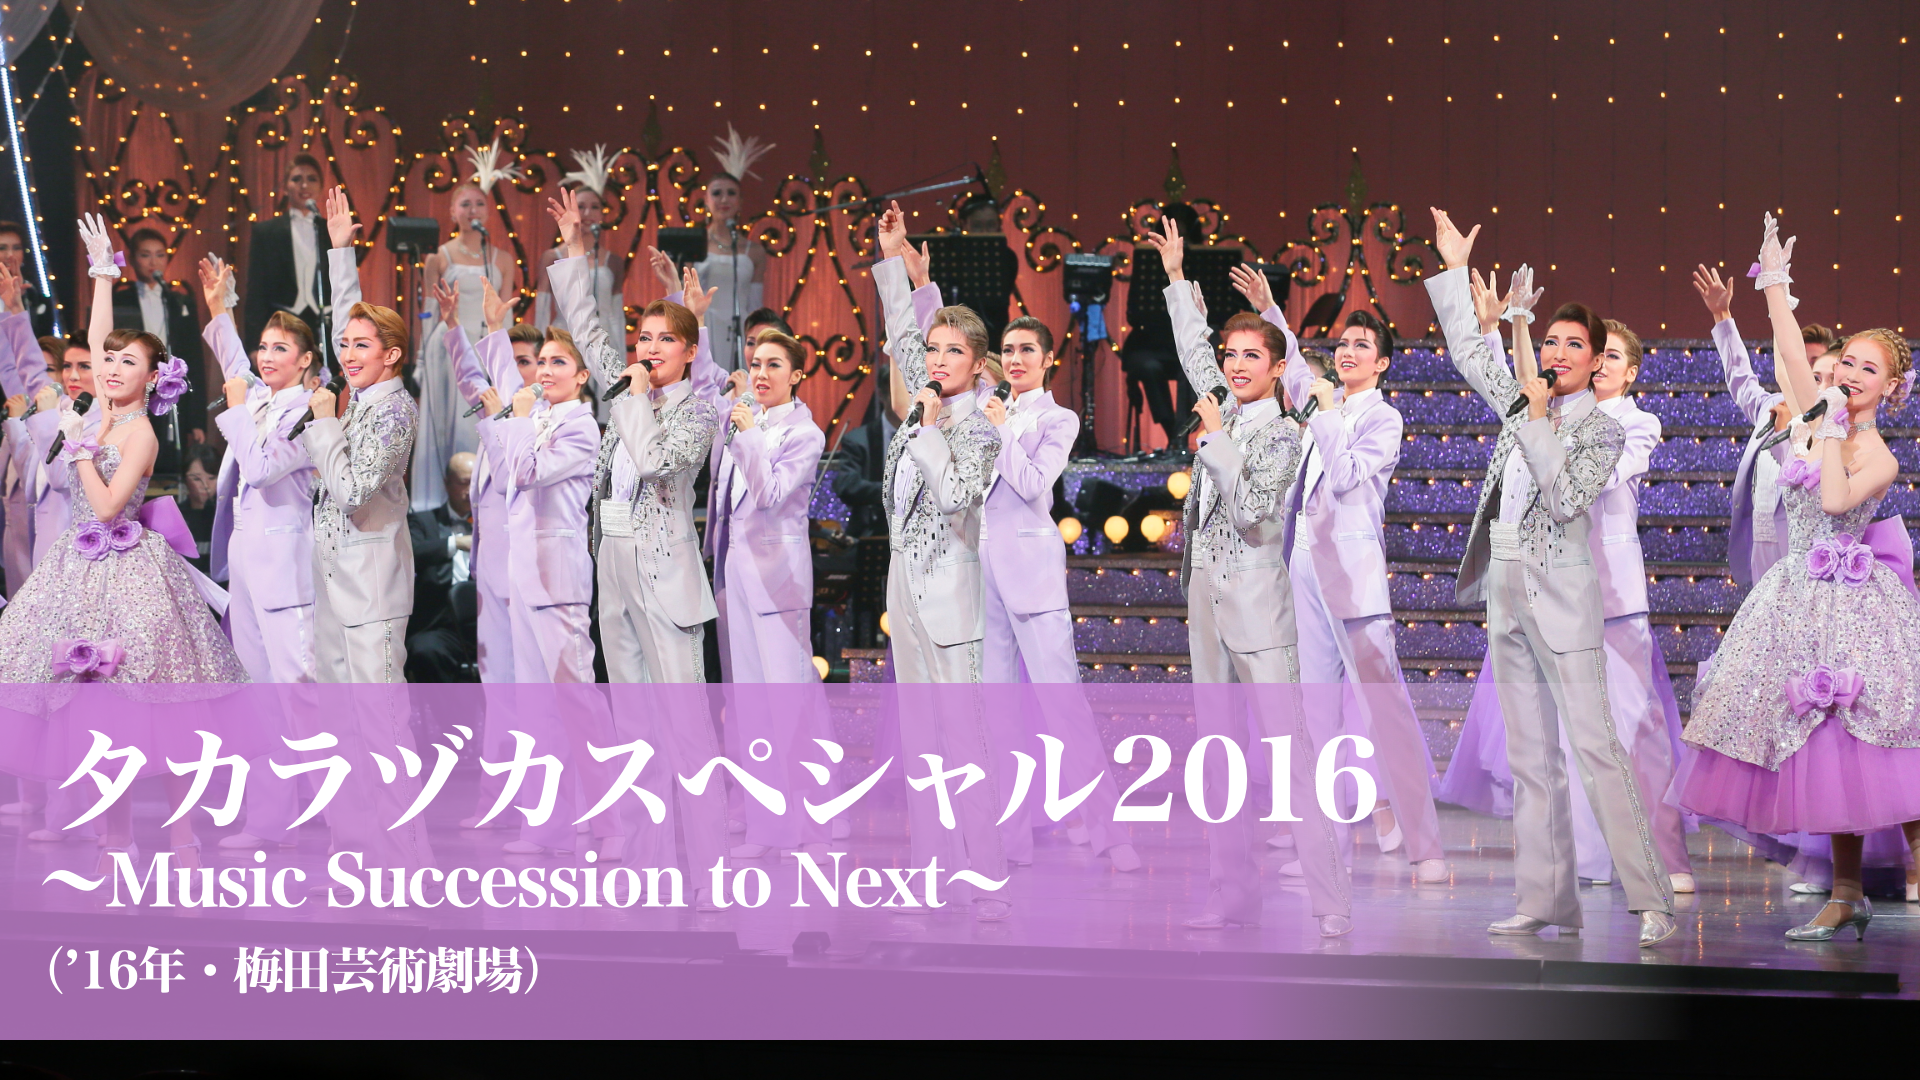 タカラヅカスペシャル2016 Music Succession to Next - DVD/ブルーレイ